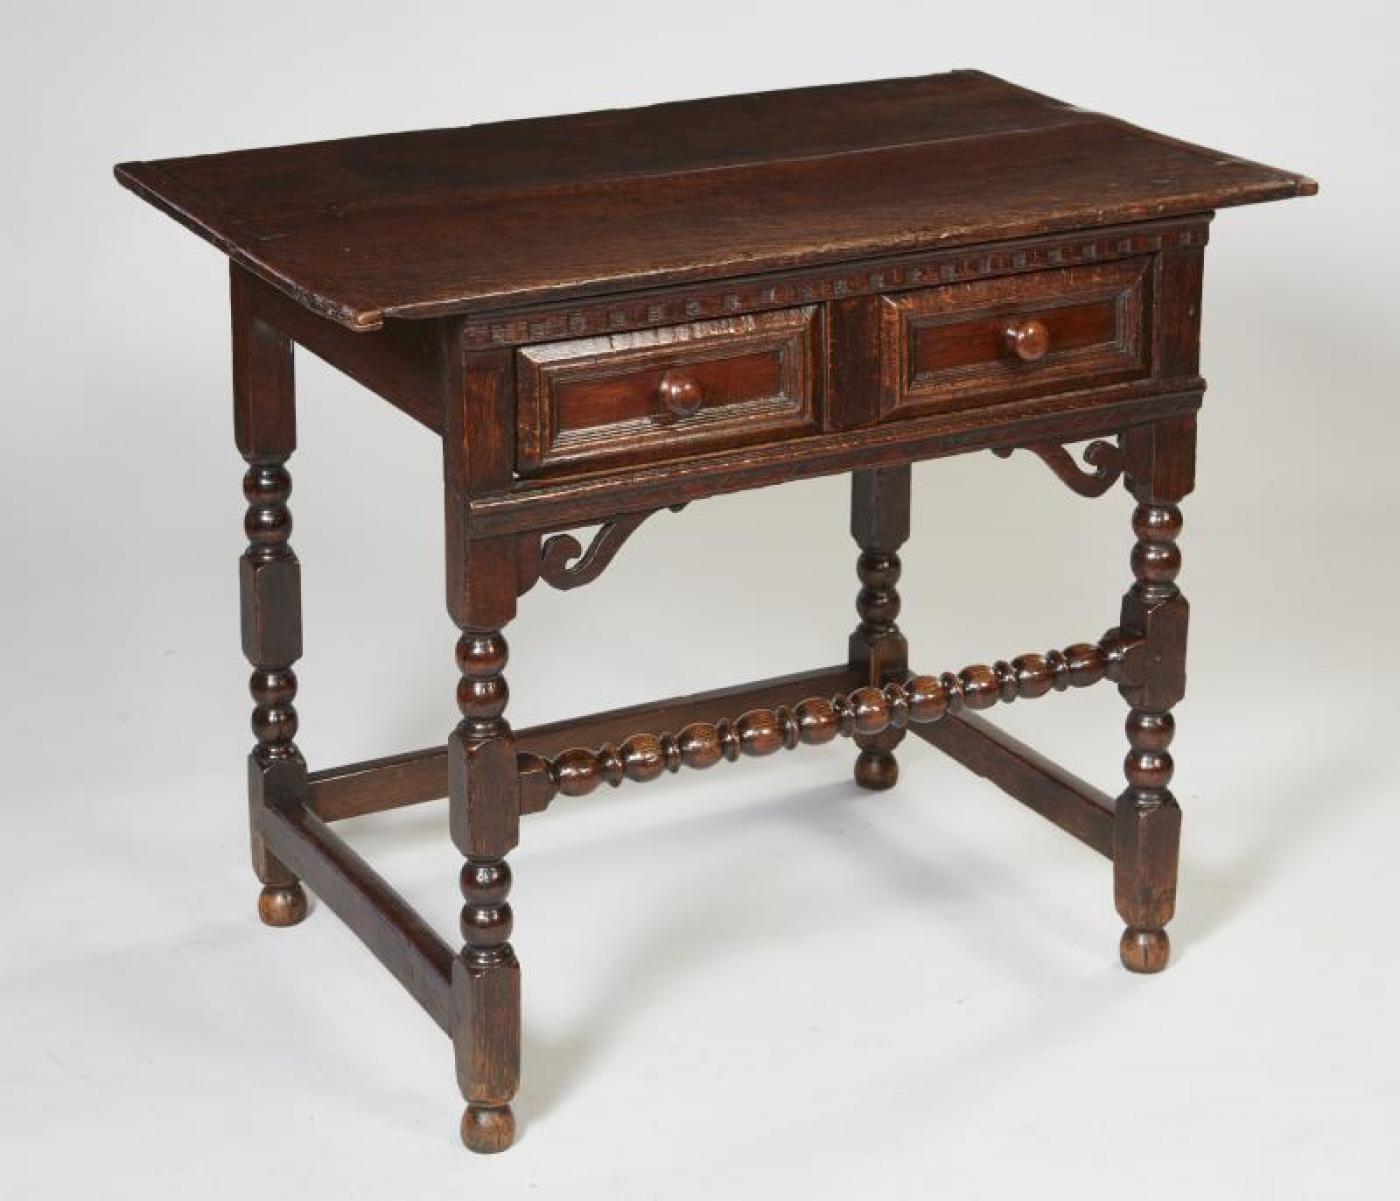 Très belle table d'appoint en chêne anglais d'époque Charles II, le plateau à deux planches avec des extrémités en planche d'angle, une frise moulée à denticules, un tiroir unique avec une moulure géométrique et des poignées en bois d'if tournées